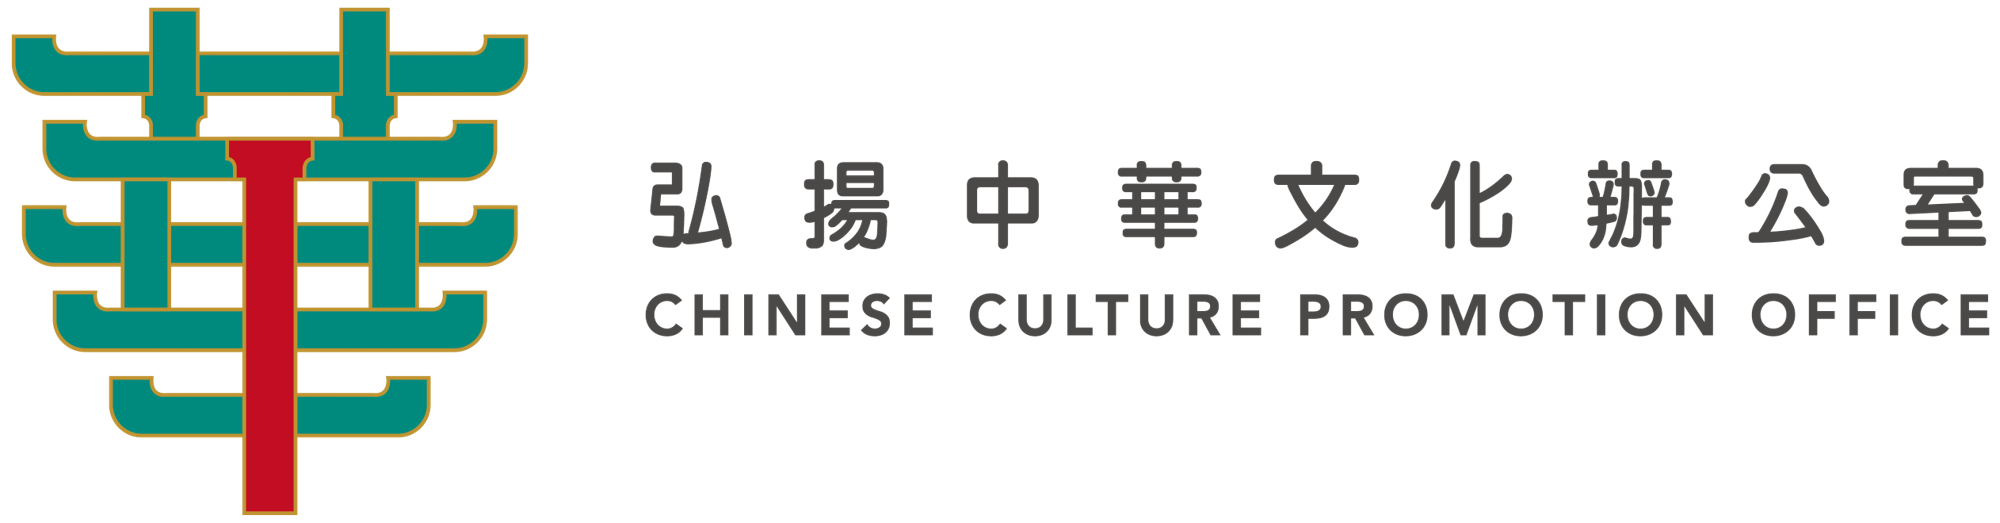 弘扬中华文化办公室 - 标志